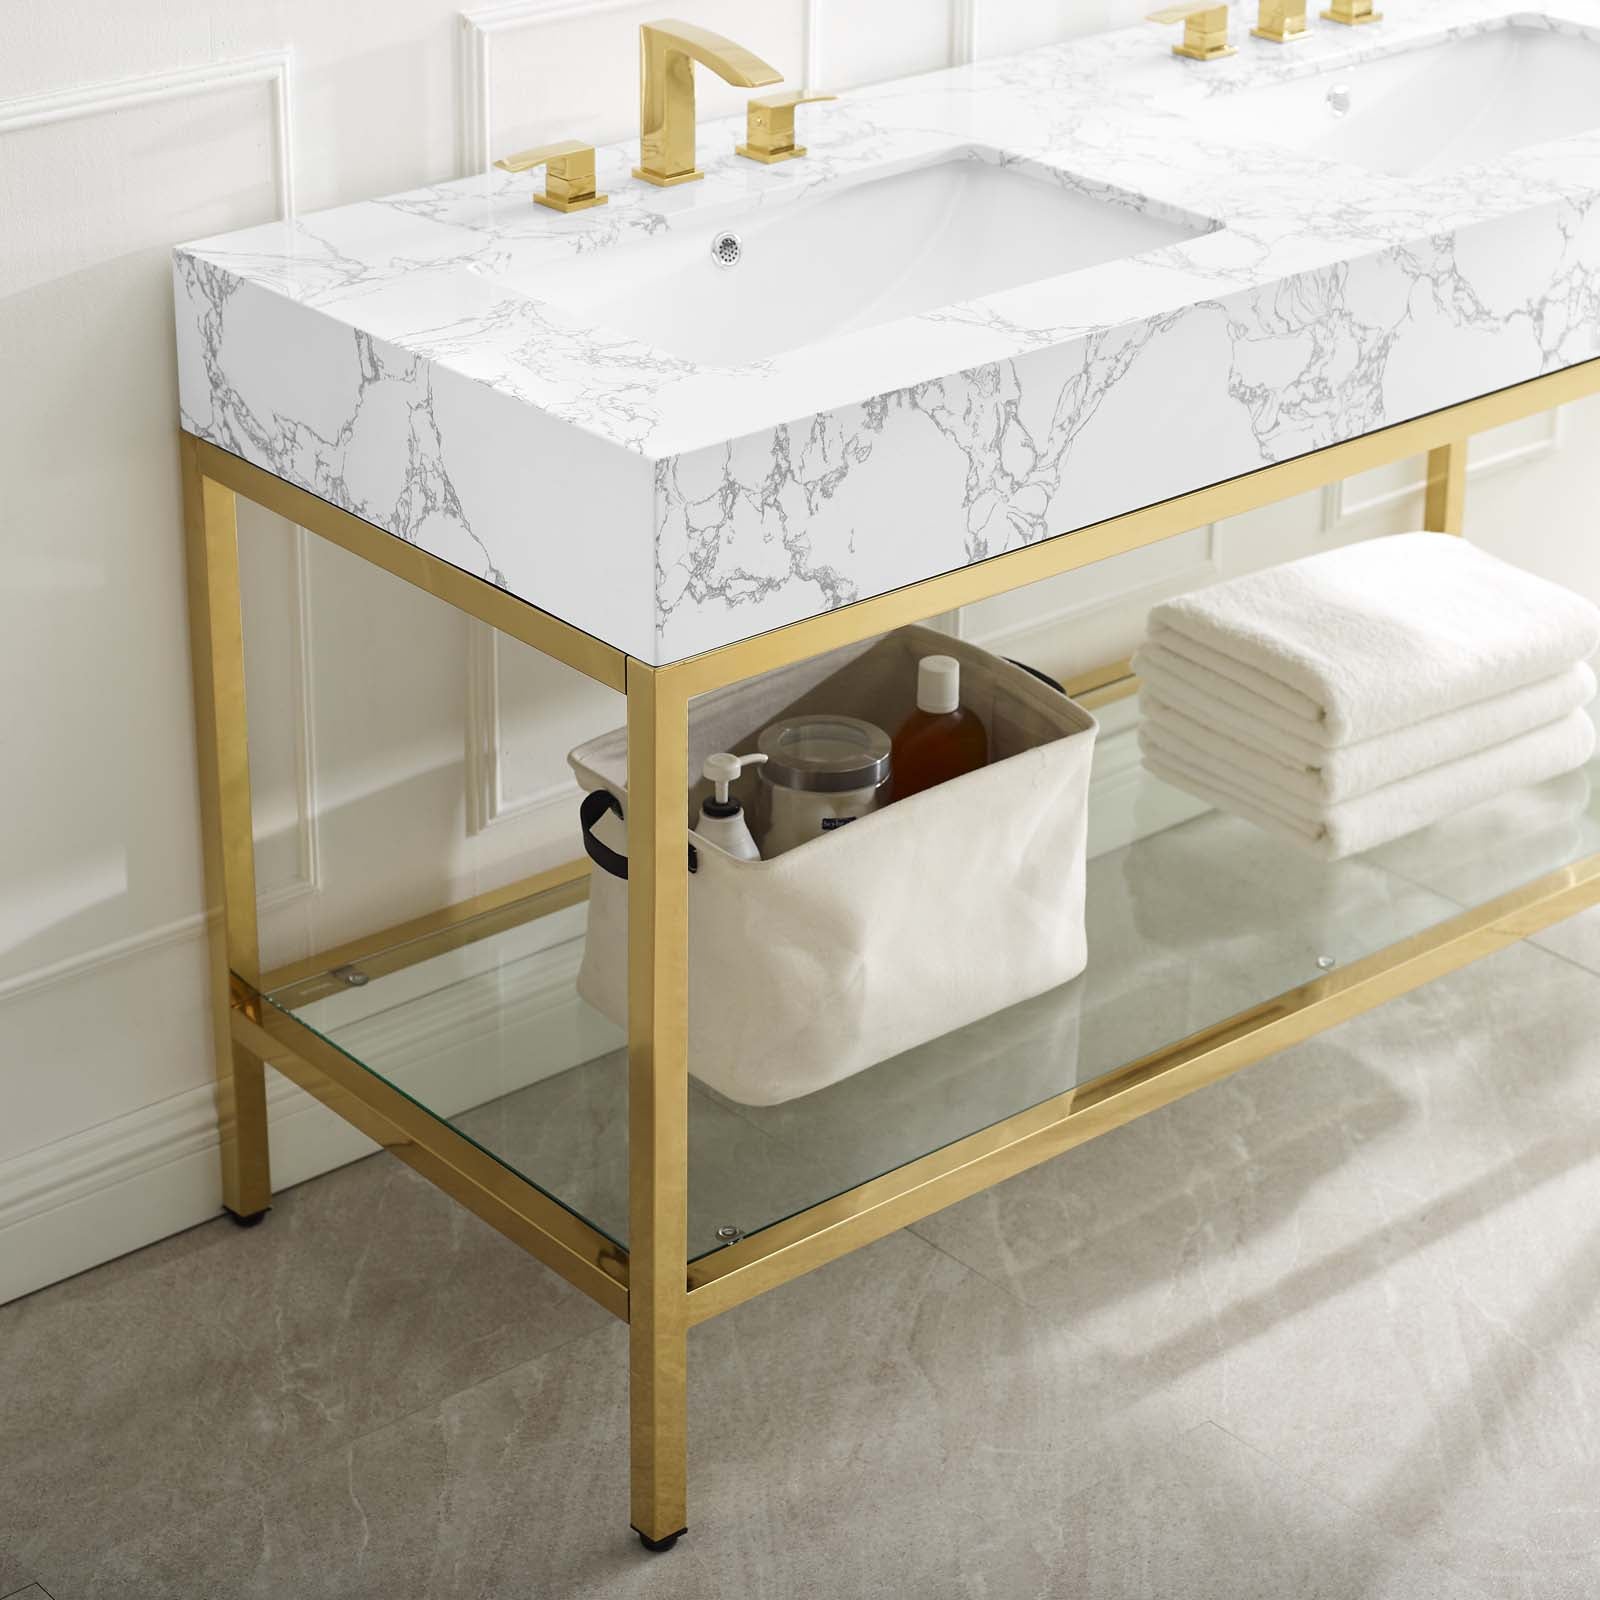 Kingsley 60" Gold Stainless Steel Bathroom Vanity-Bathroom Vanity-Modway-Wall2Wall Furnishings